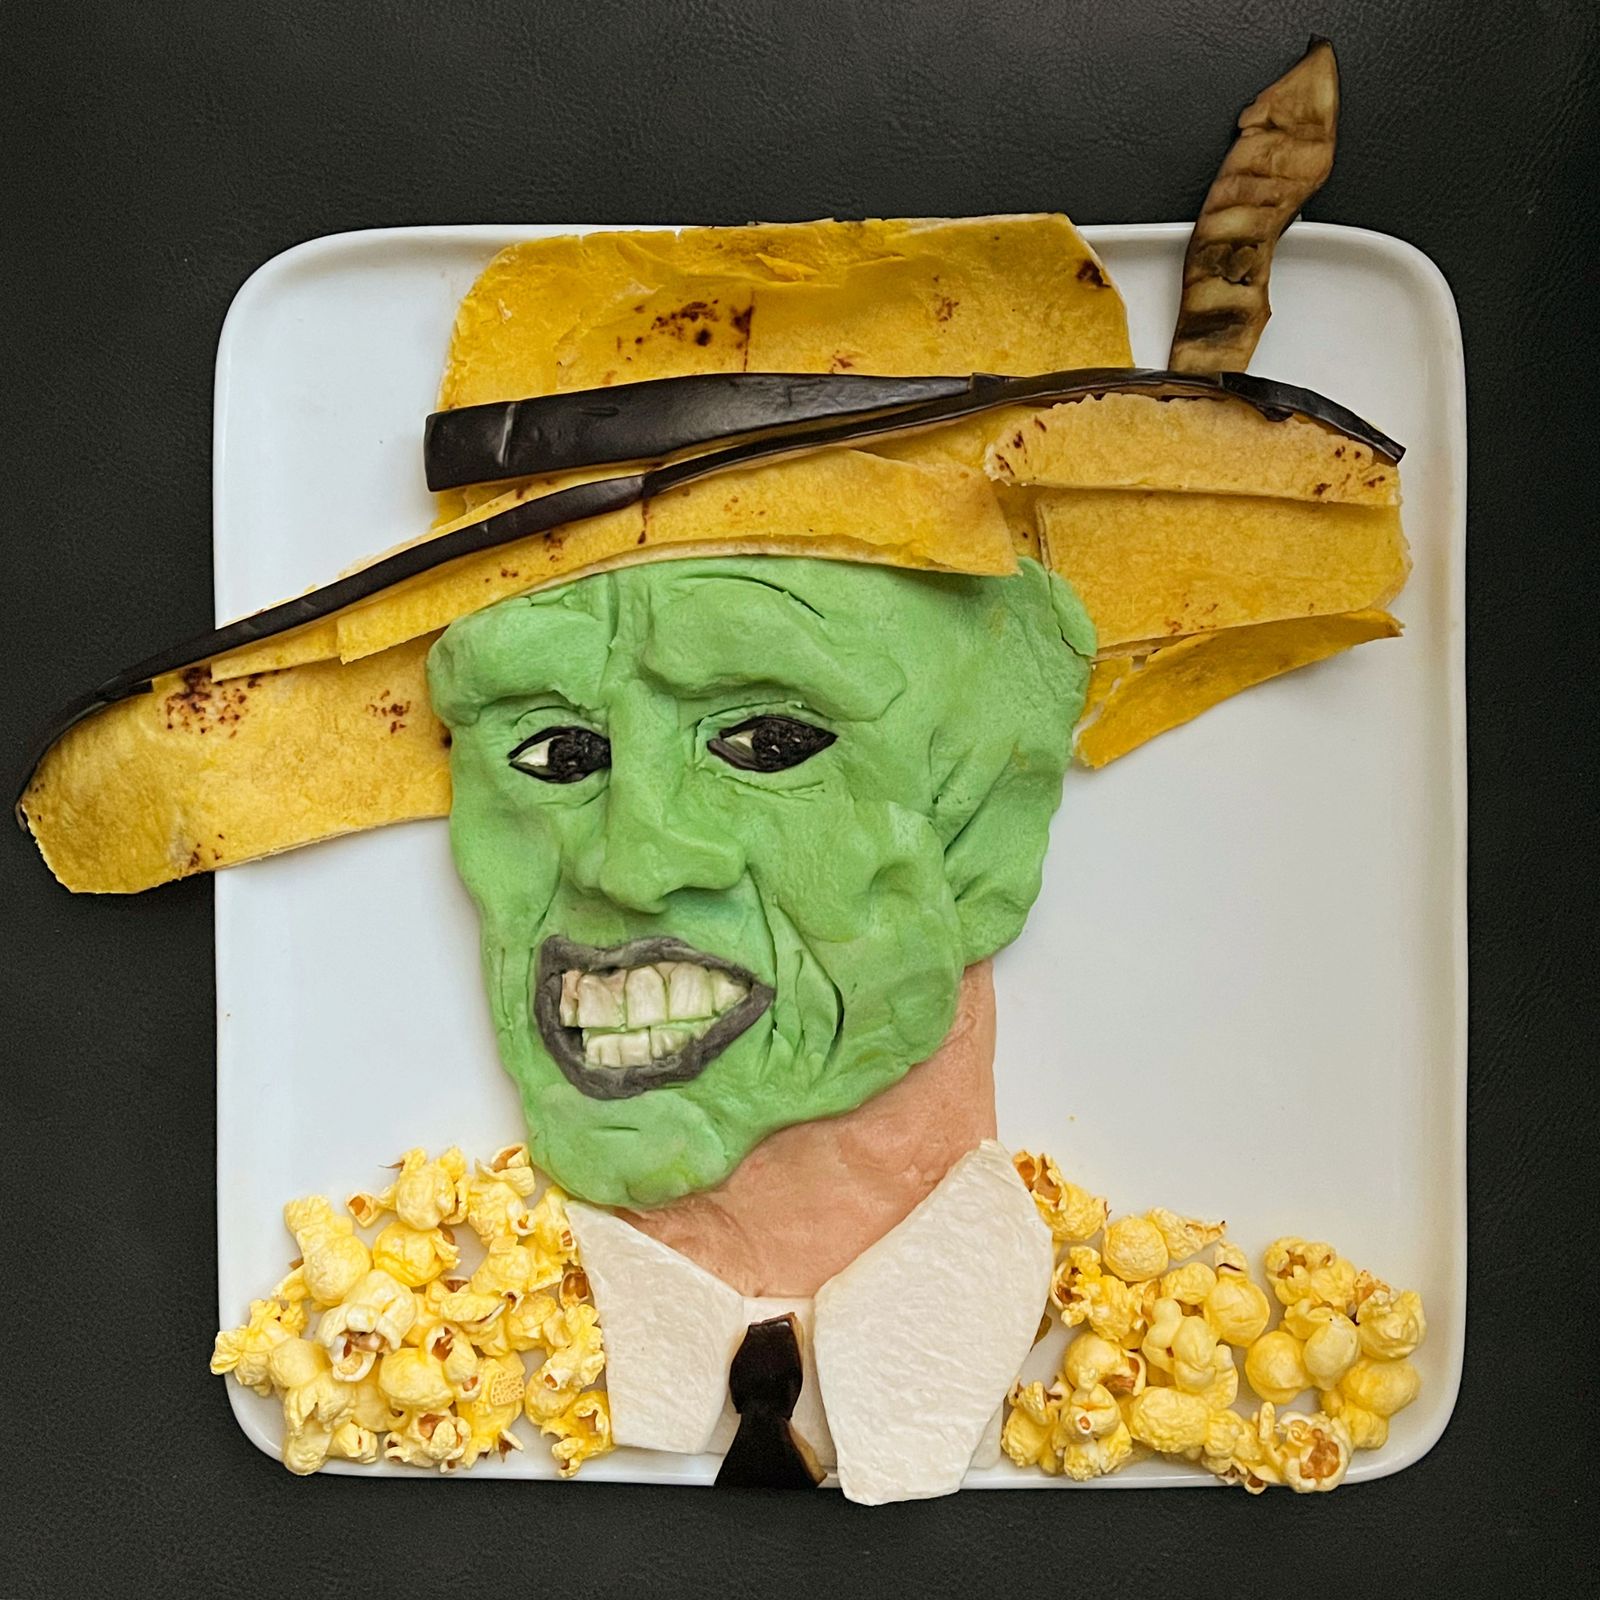 Портрет Джима Керри в образе «Маски», созданный кулинарным художником Харли Лэнгбергом